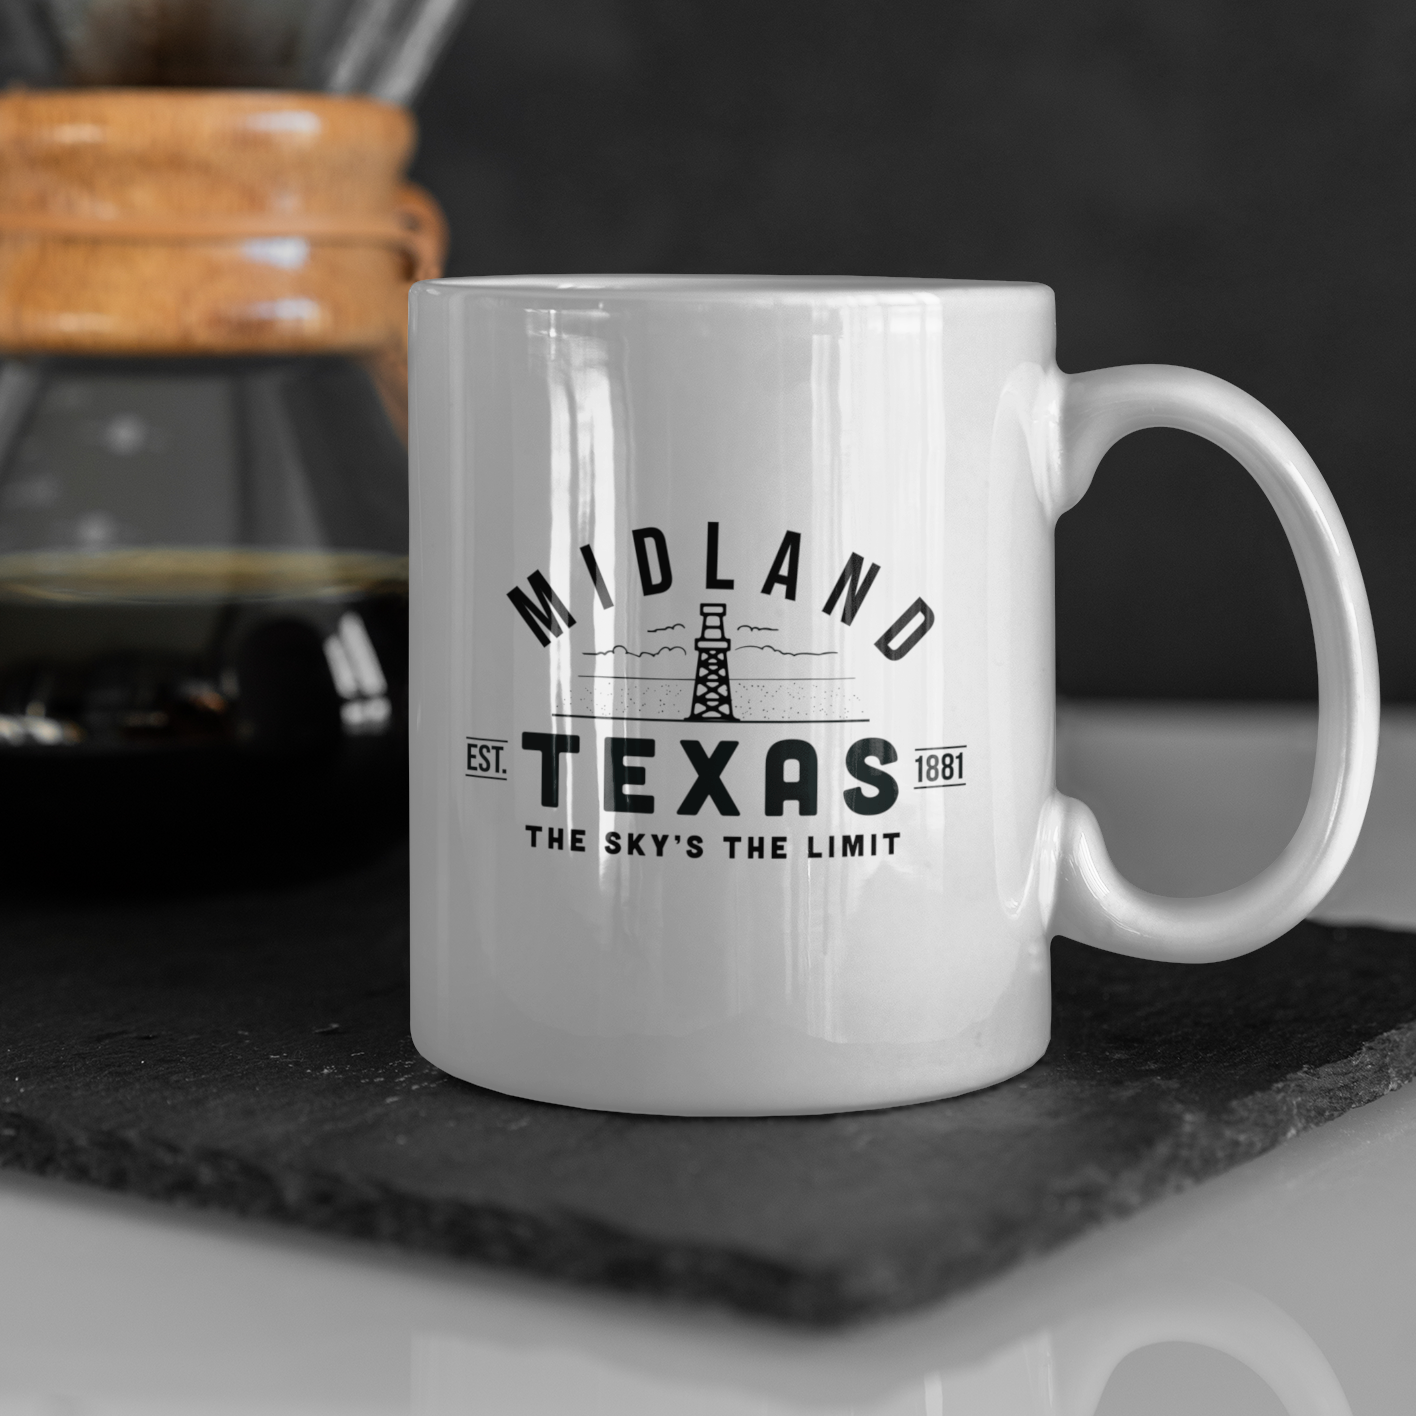 Midland Texas Mug